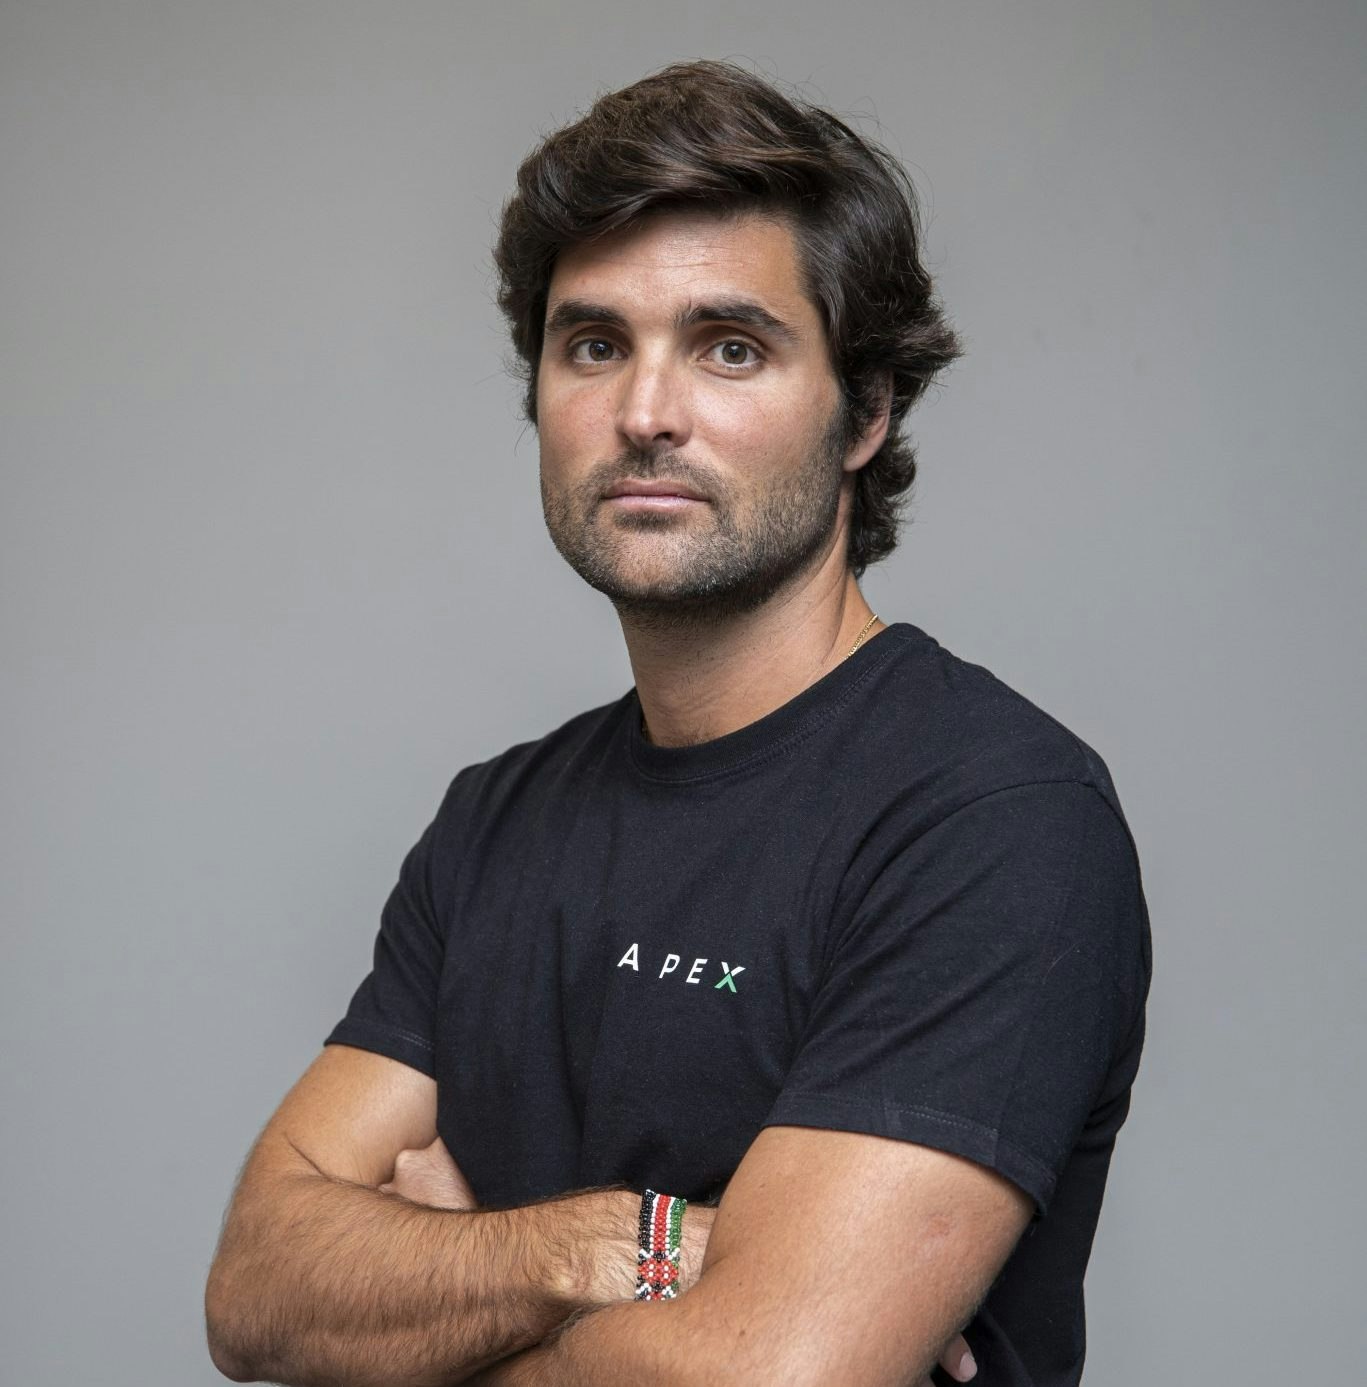 Antonio Cacorino, founder of APEX Capital,